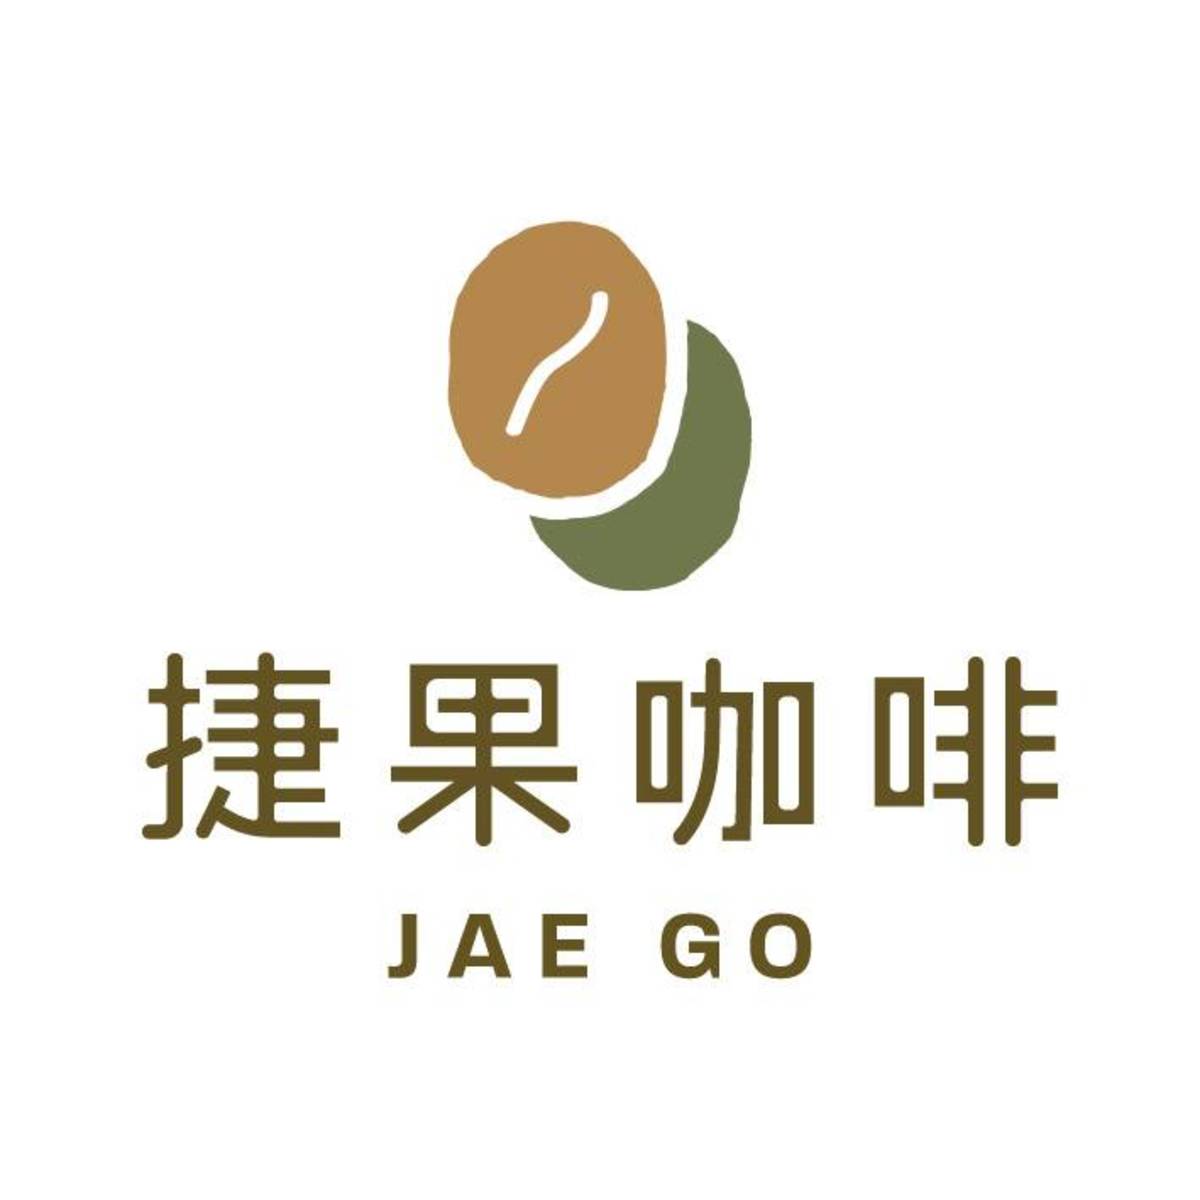 捷果咖啡 Jae Go Café